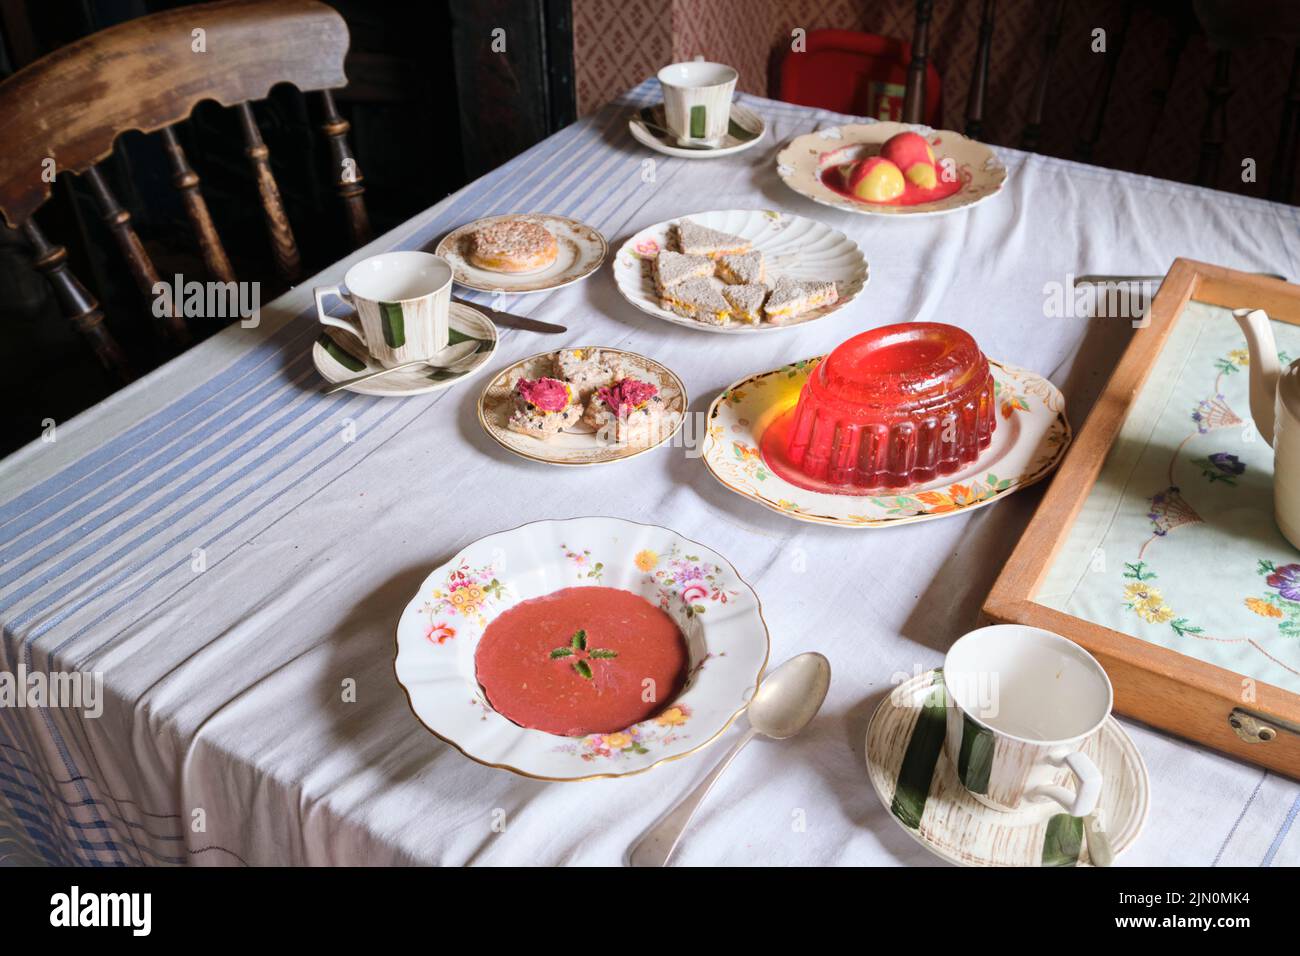 Table de salle à manger avec faux aliments en plastique. Soupe, jello, aspique, sandwiches de thé, poires, scones. Dans une récréation d'une maison de travail typique, générique, maison Banque D'Images